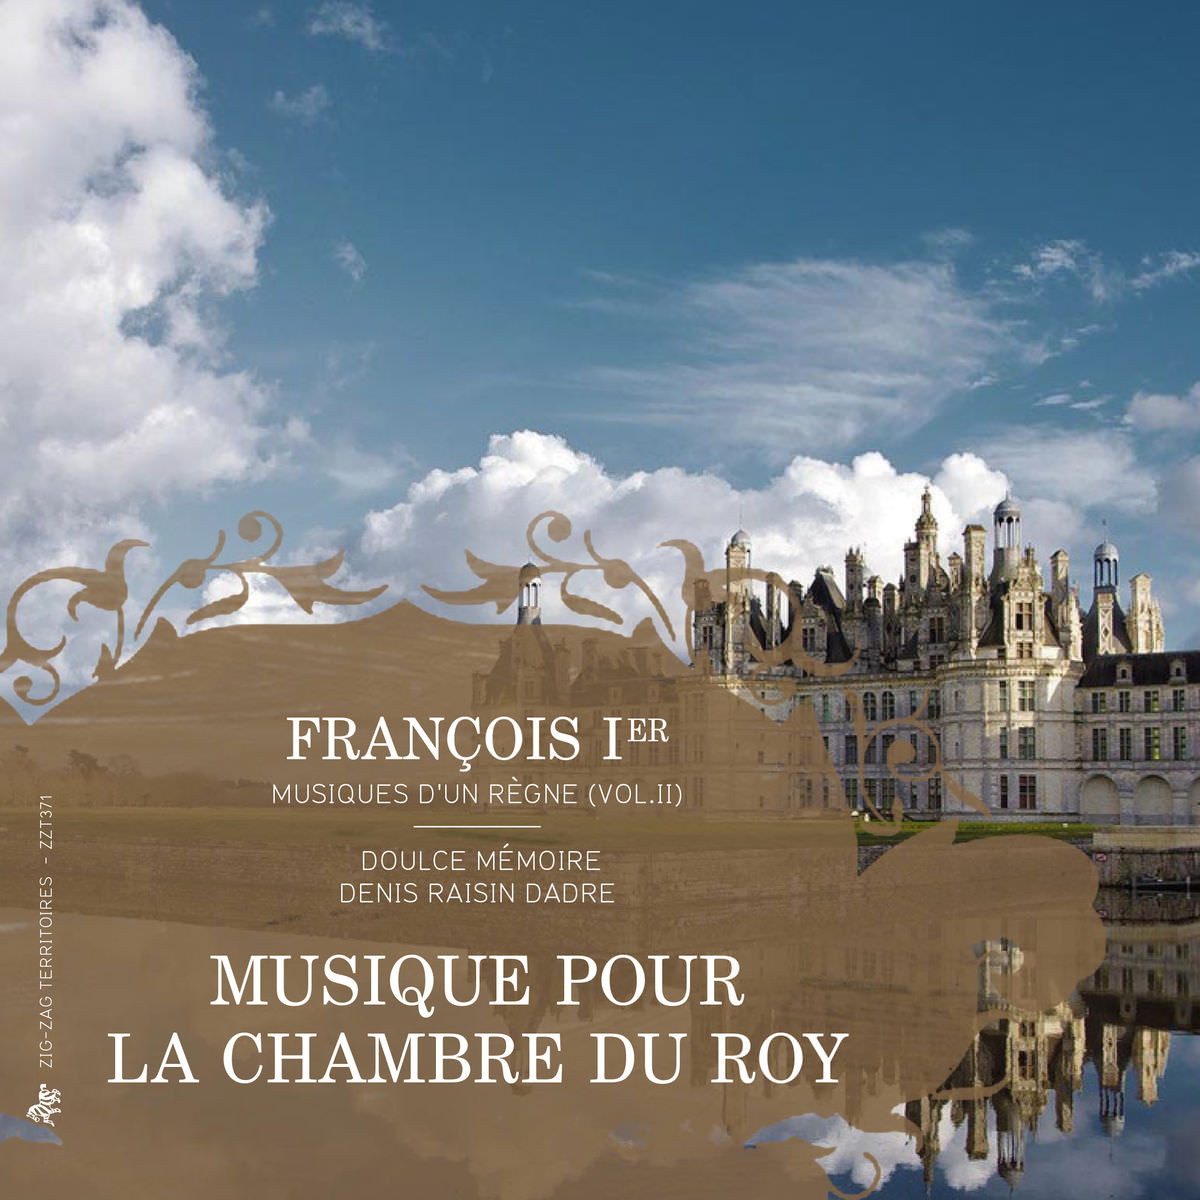 Denis Raisin Dadre & Doulce Memoire – François Ier, musiques d’un regne, Vol. 2: Musique pour la chambre du Roy (2015) [FLAC 24bit/88,2kHz]